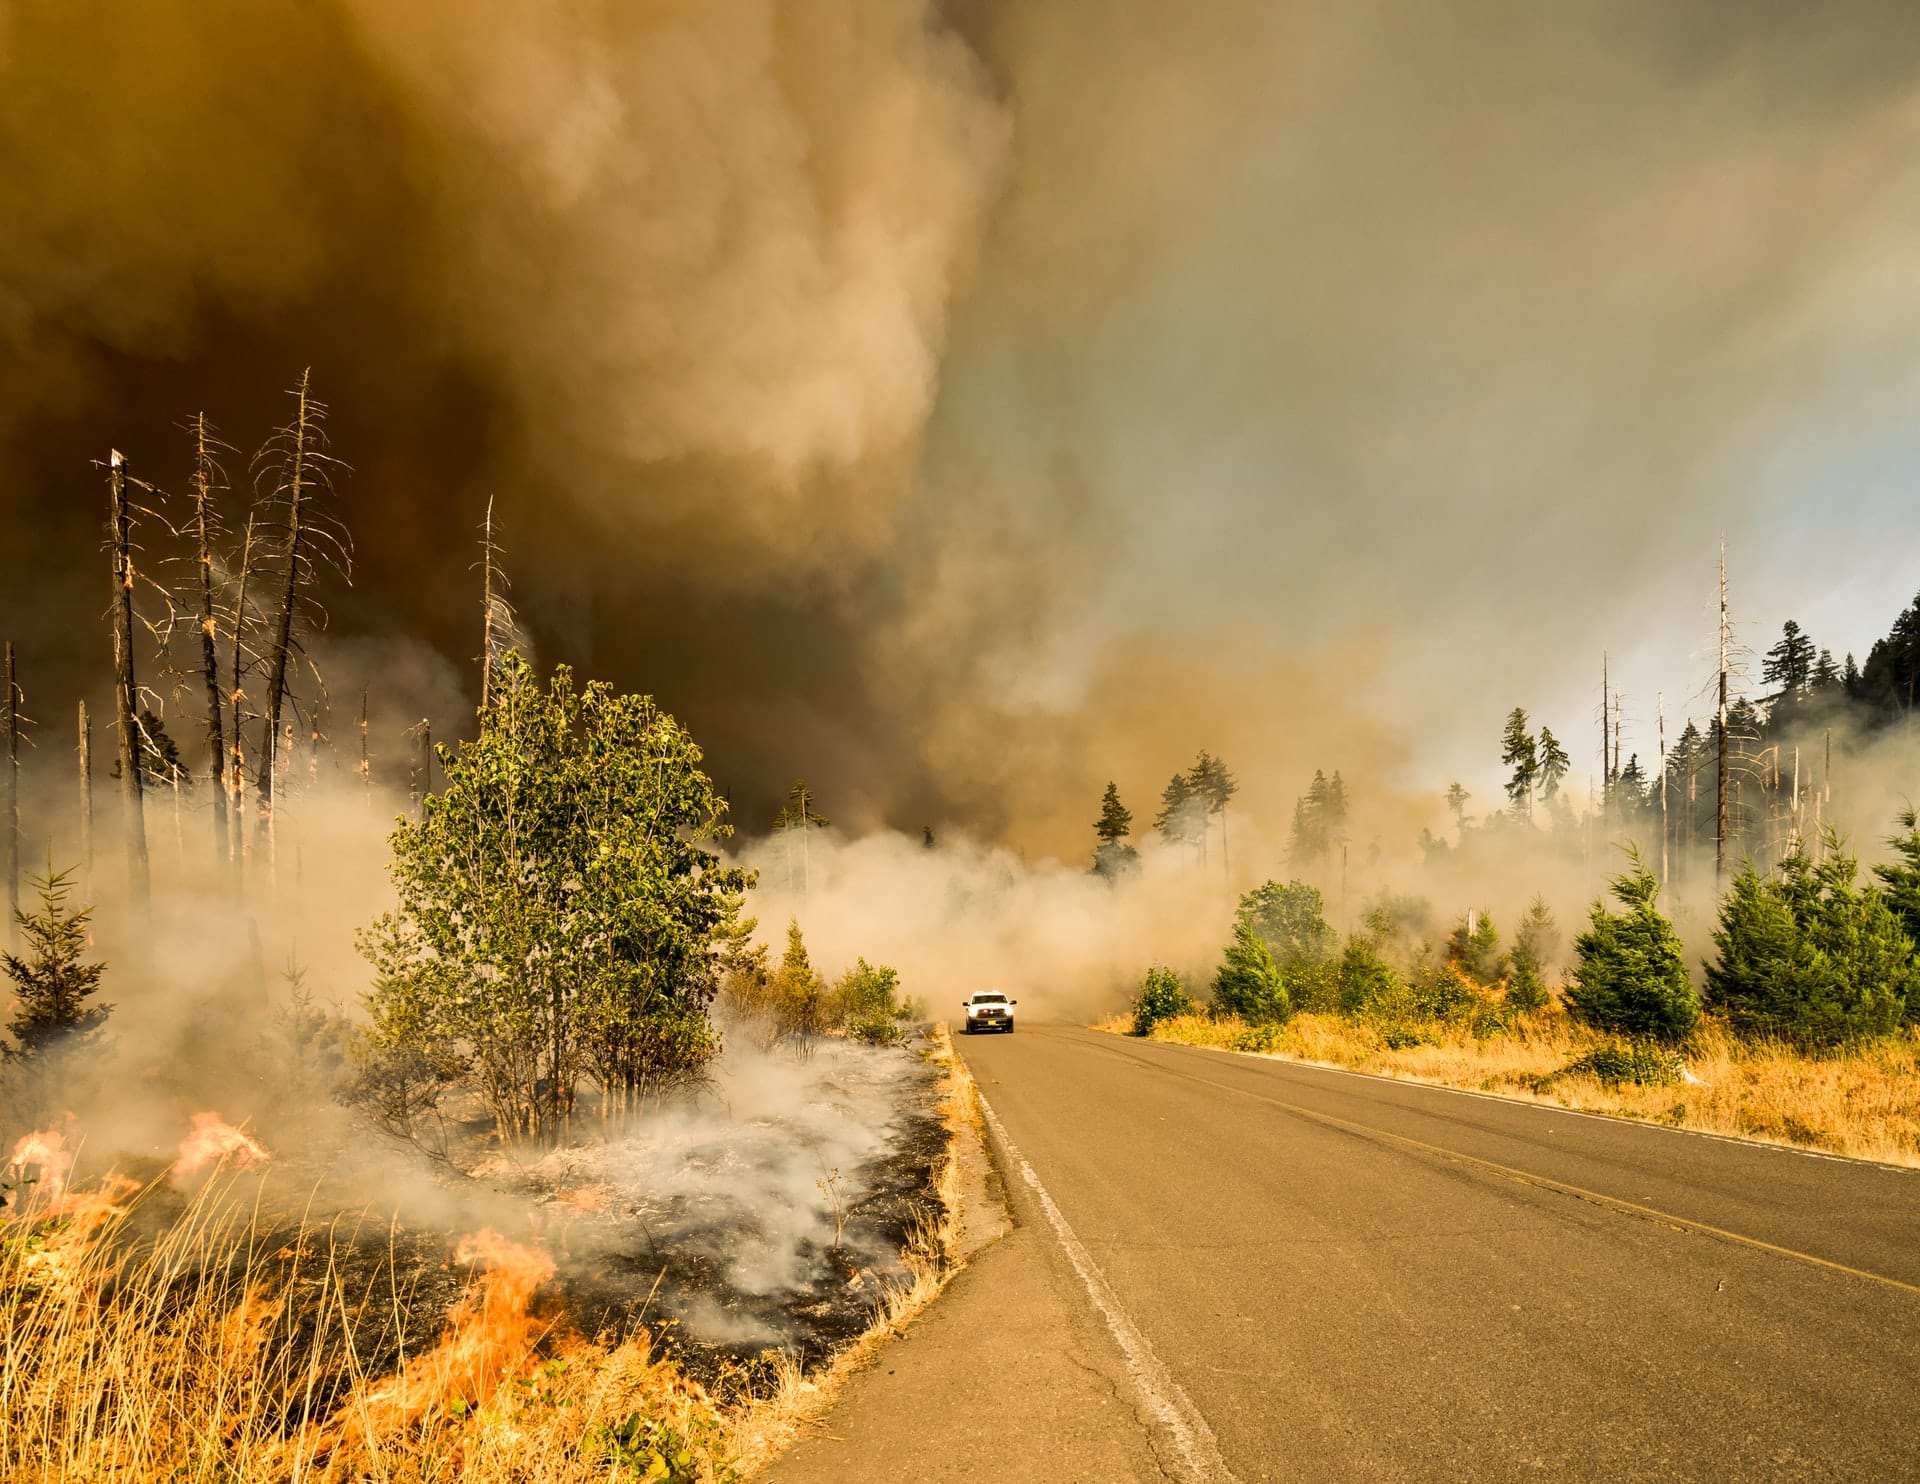 Gemeinsam mit GRID-Arendal veröffentlichte das UN-Umweltprogramm UNEP kürzlich neueste Zahlen zur Gefahr von Waldbrand. Hier sind die Ergebnisse zu den Waldbränden.